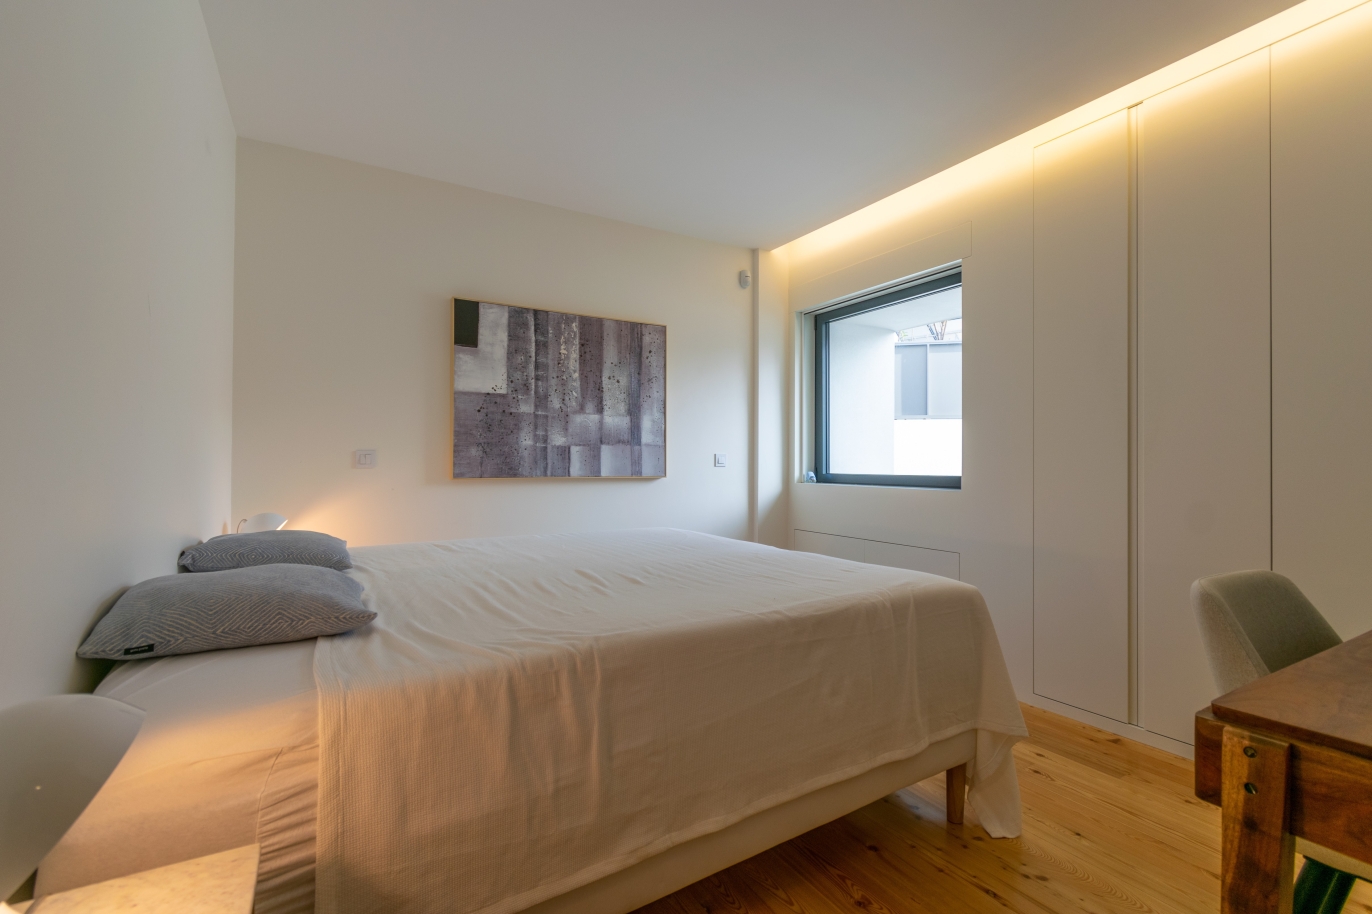 3 bedroom apartment, for sale, near Parque da Cidade, Porto, Portugal_246169